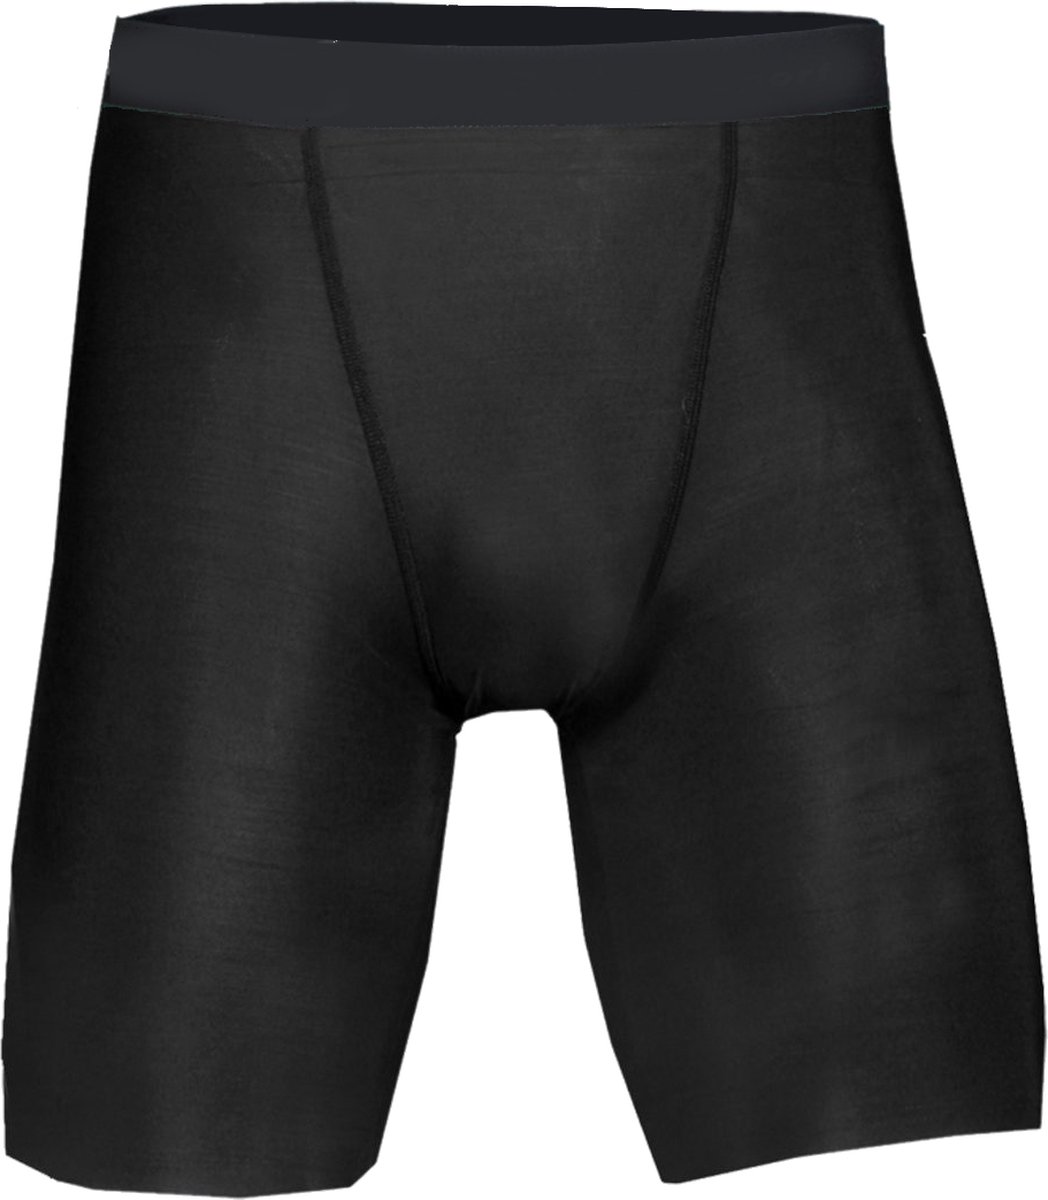 BADGER SPORT - Shorts - Pro Compression - Diverse Sporten - Volwassenen - Polyester - Heren - Zwart - Large